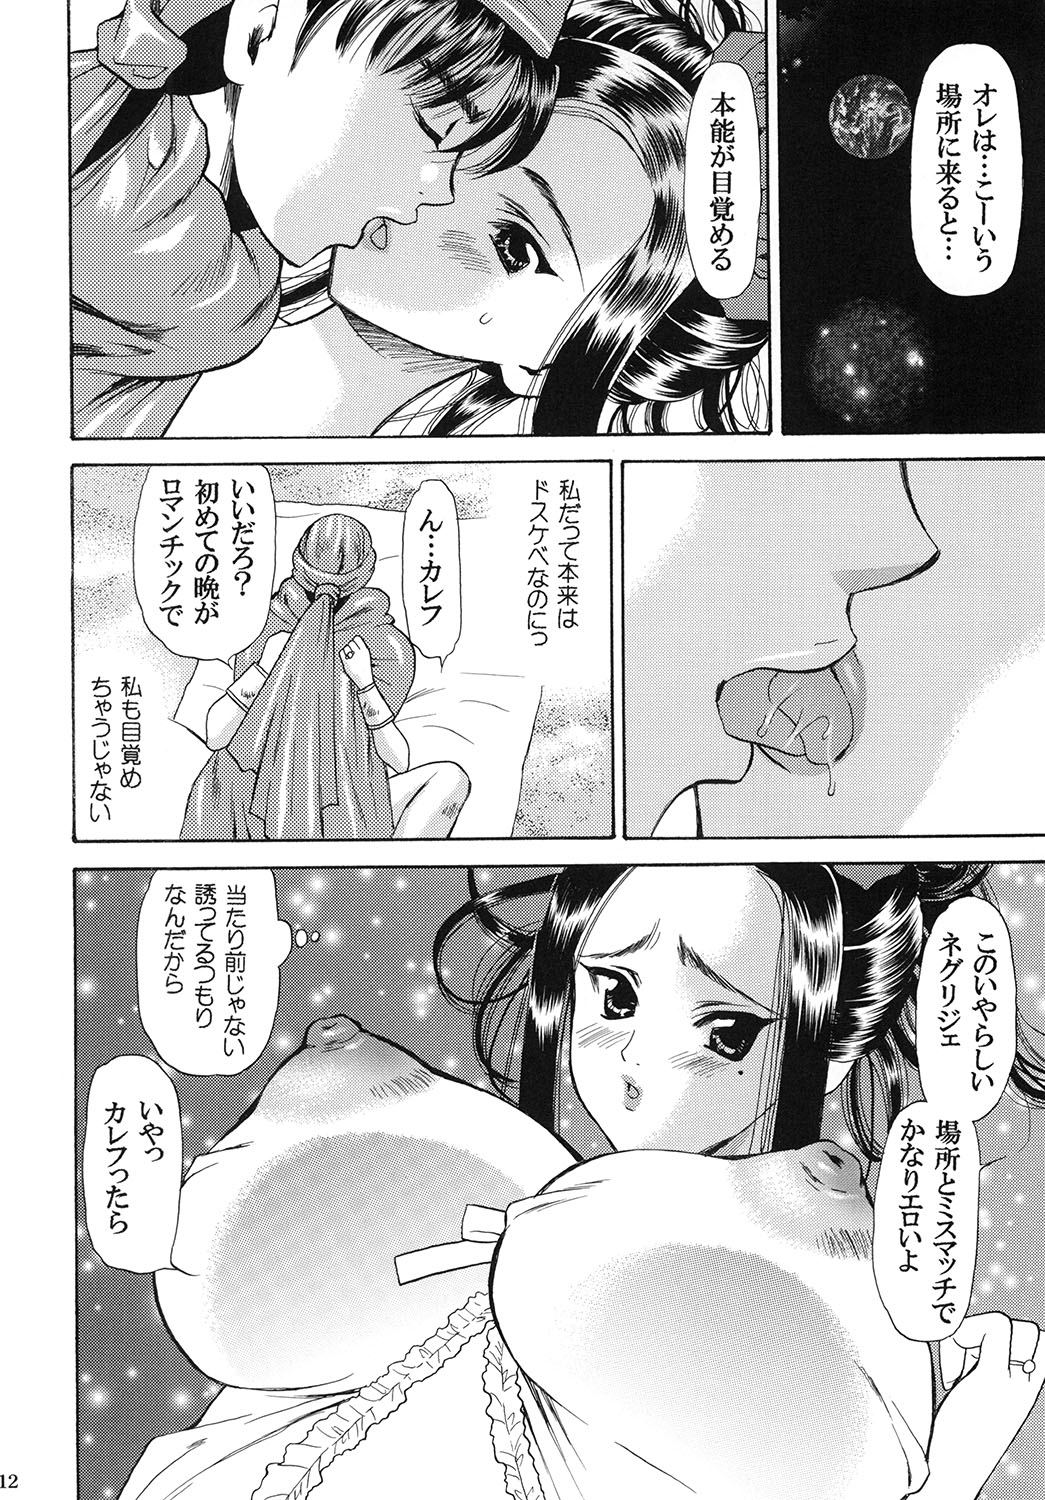 [Houruri (Houruri)] Tsukiyo no Sabaku de Hajimete wo (Dragon Quest V) page 11 full